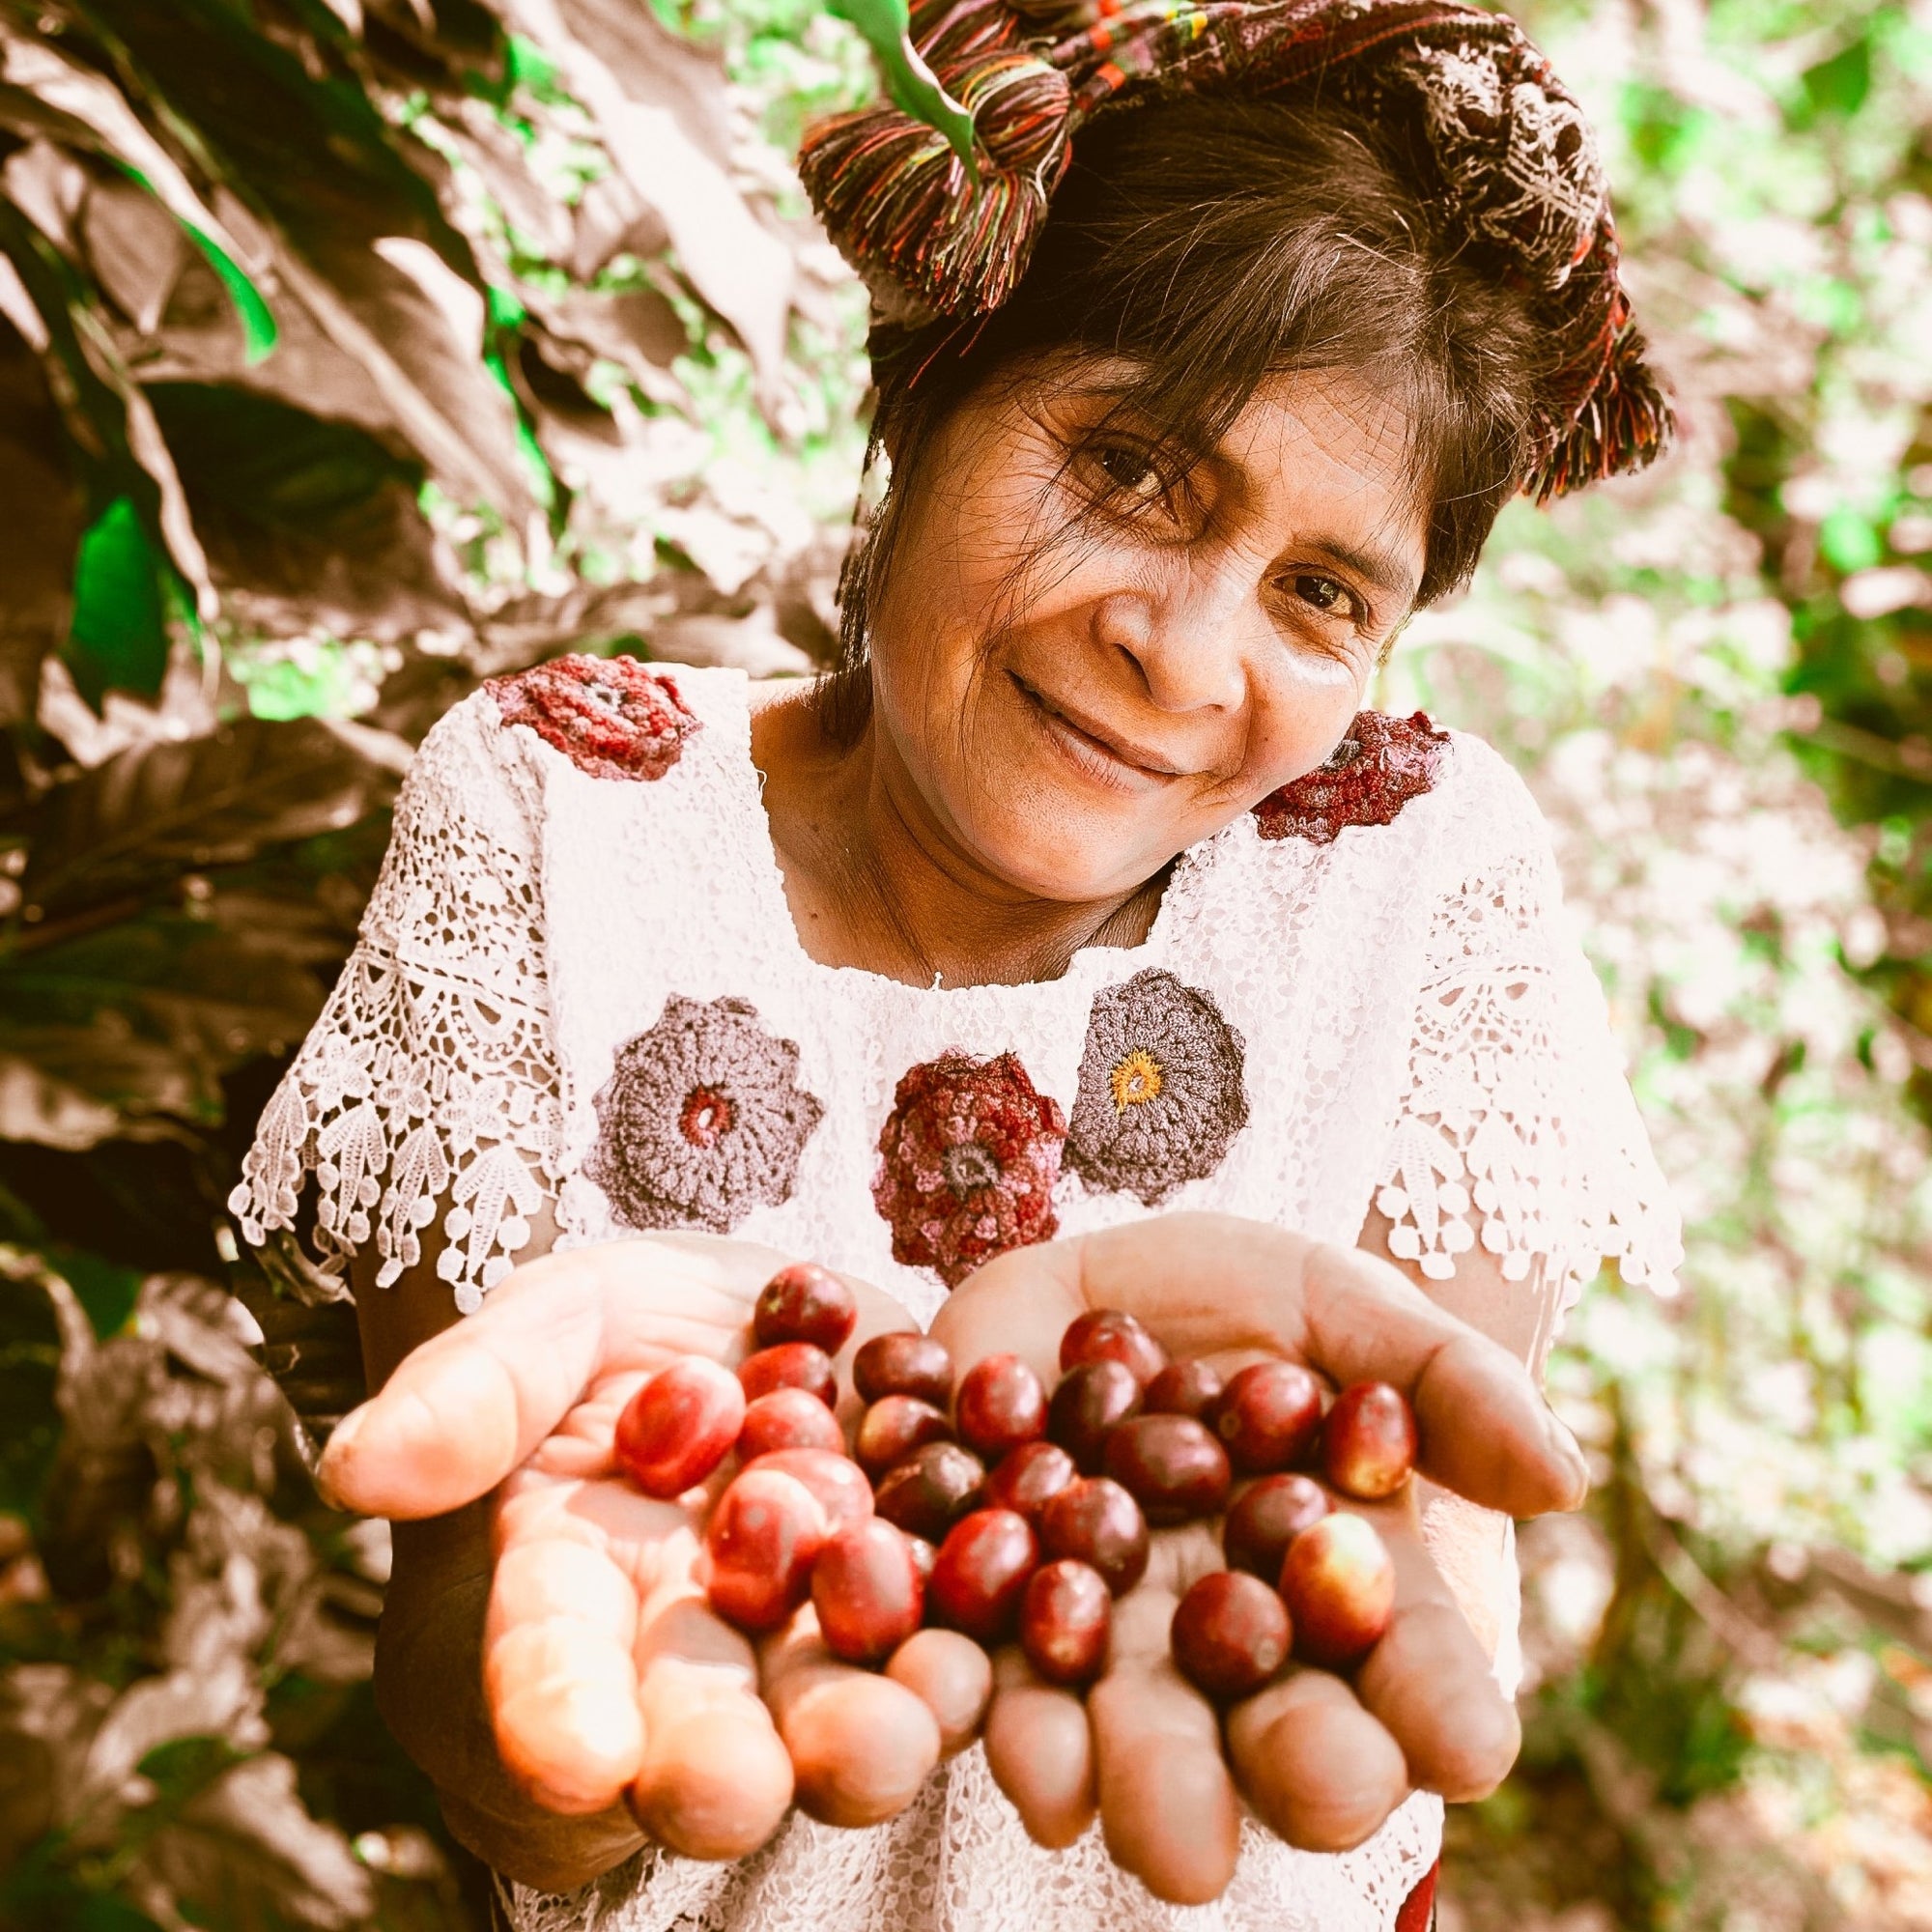 Kaffeeseminar: Einstieg in die Welt des Kaffees - Eskaro - Esser Kaffeerösterei und Handelsgesellschaft mbH